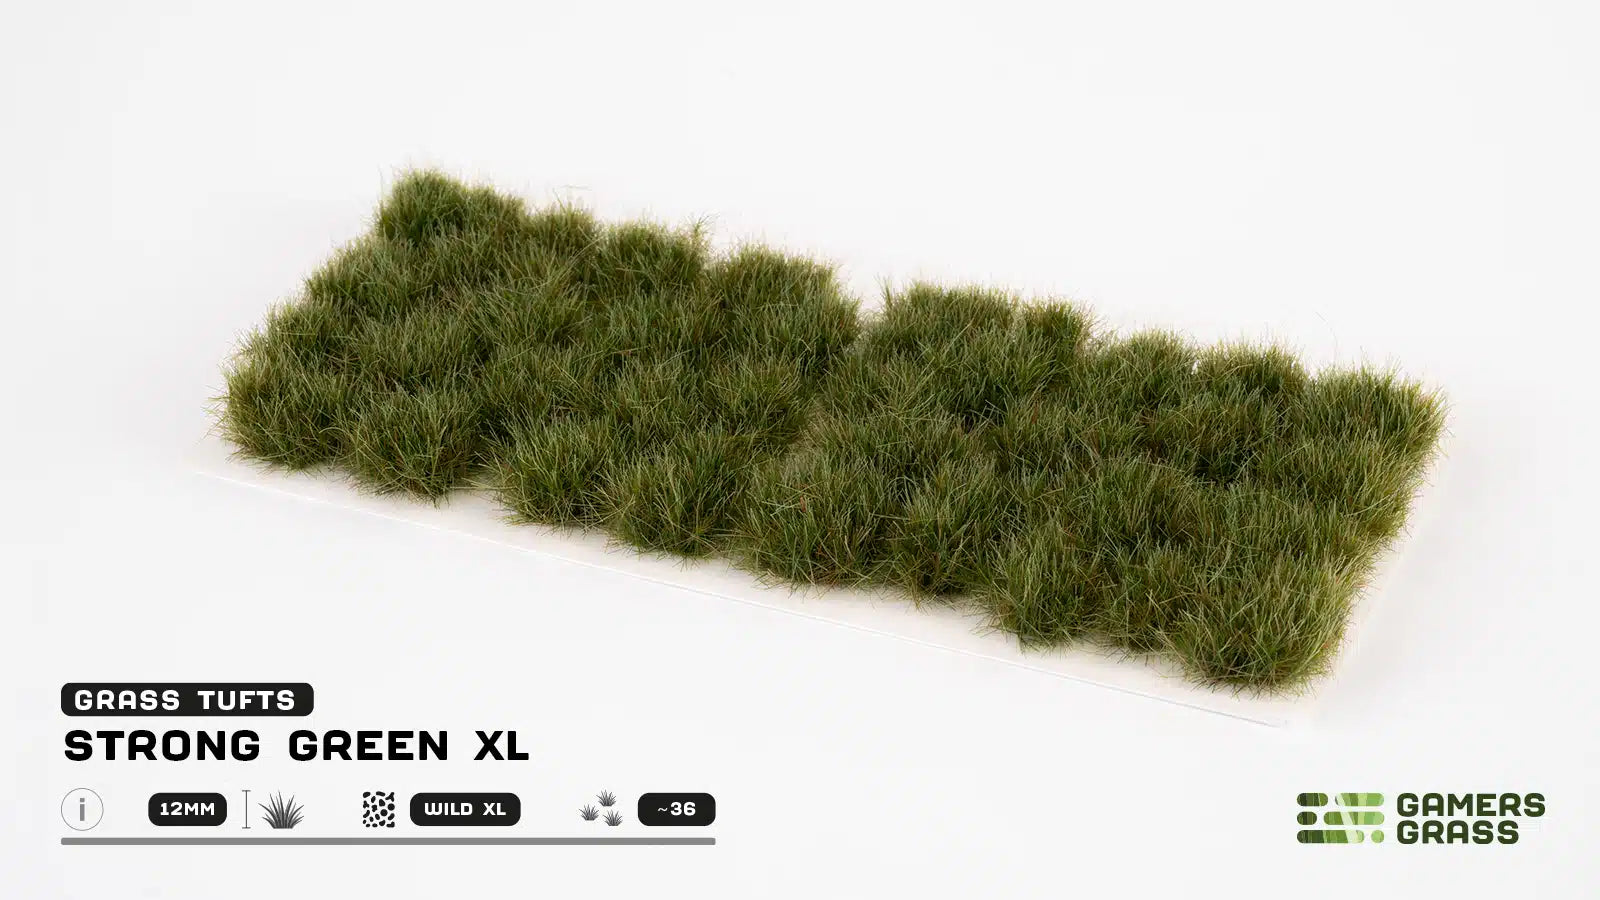 GAMERSGRASS: STRONG GREEN - XL WILD TUFTS - 12MM | Boutique FDB